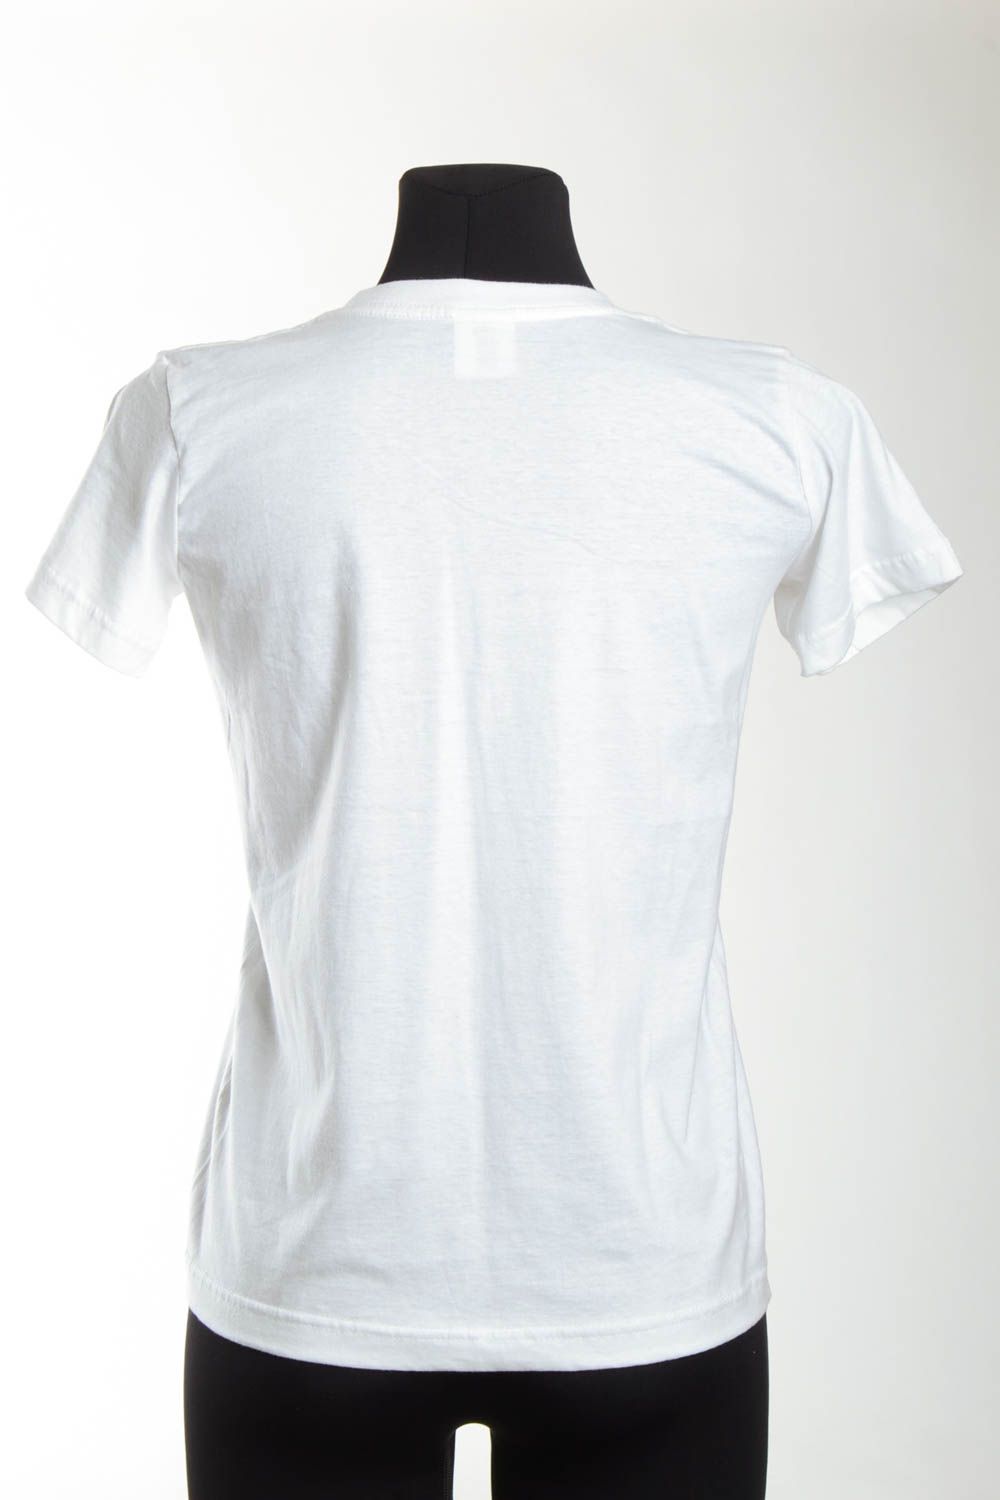 Camiseta de algodón blanca hecha a mano ropa de moda regalo para mujer foto 5